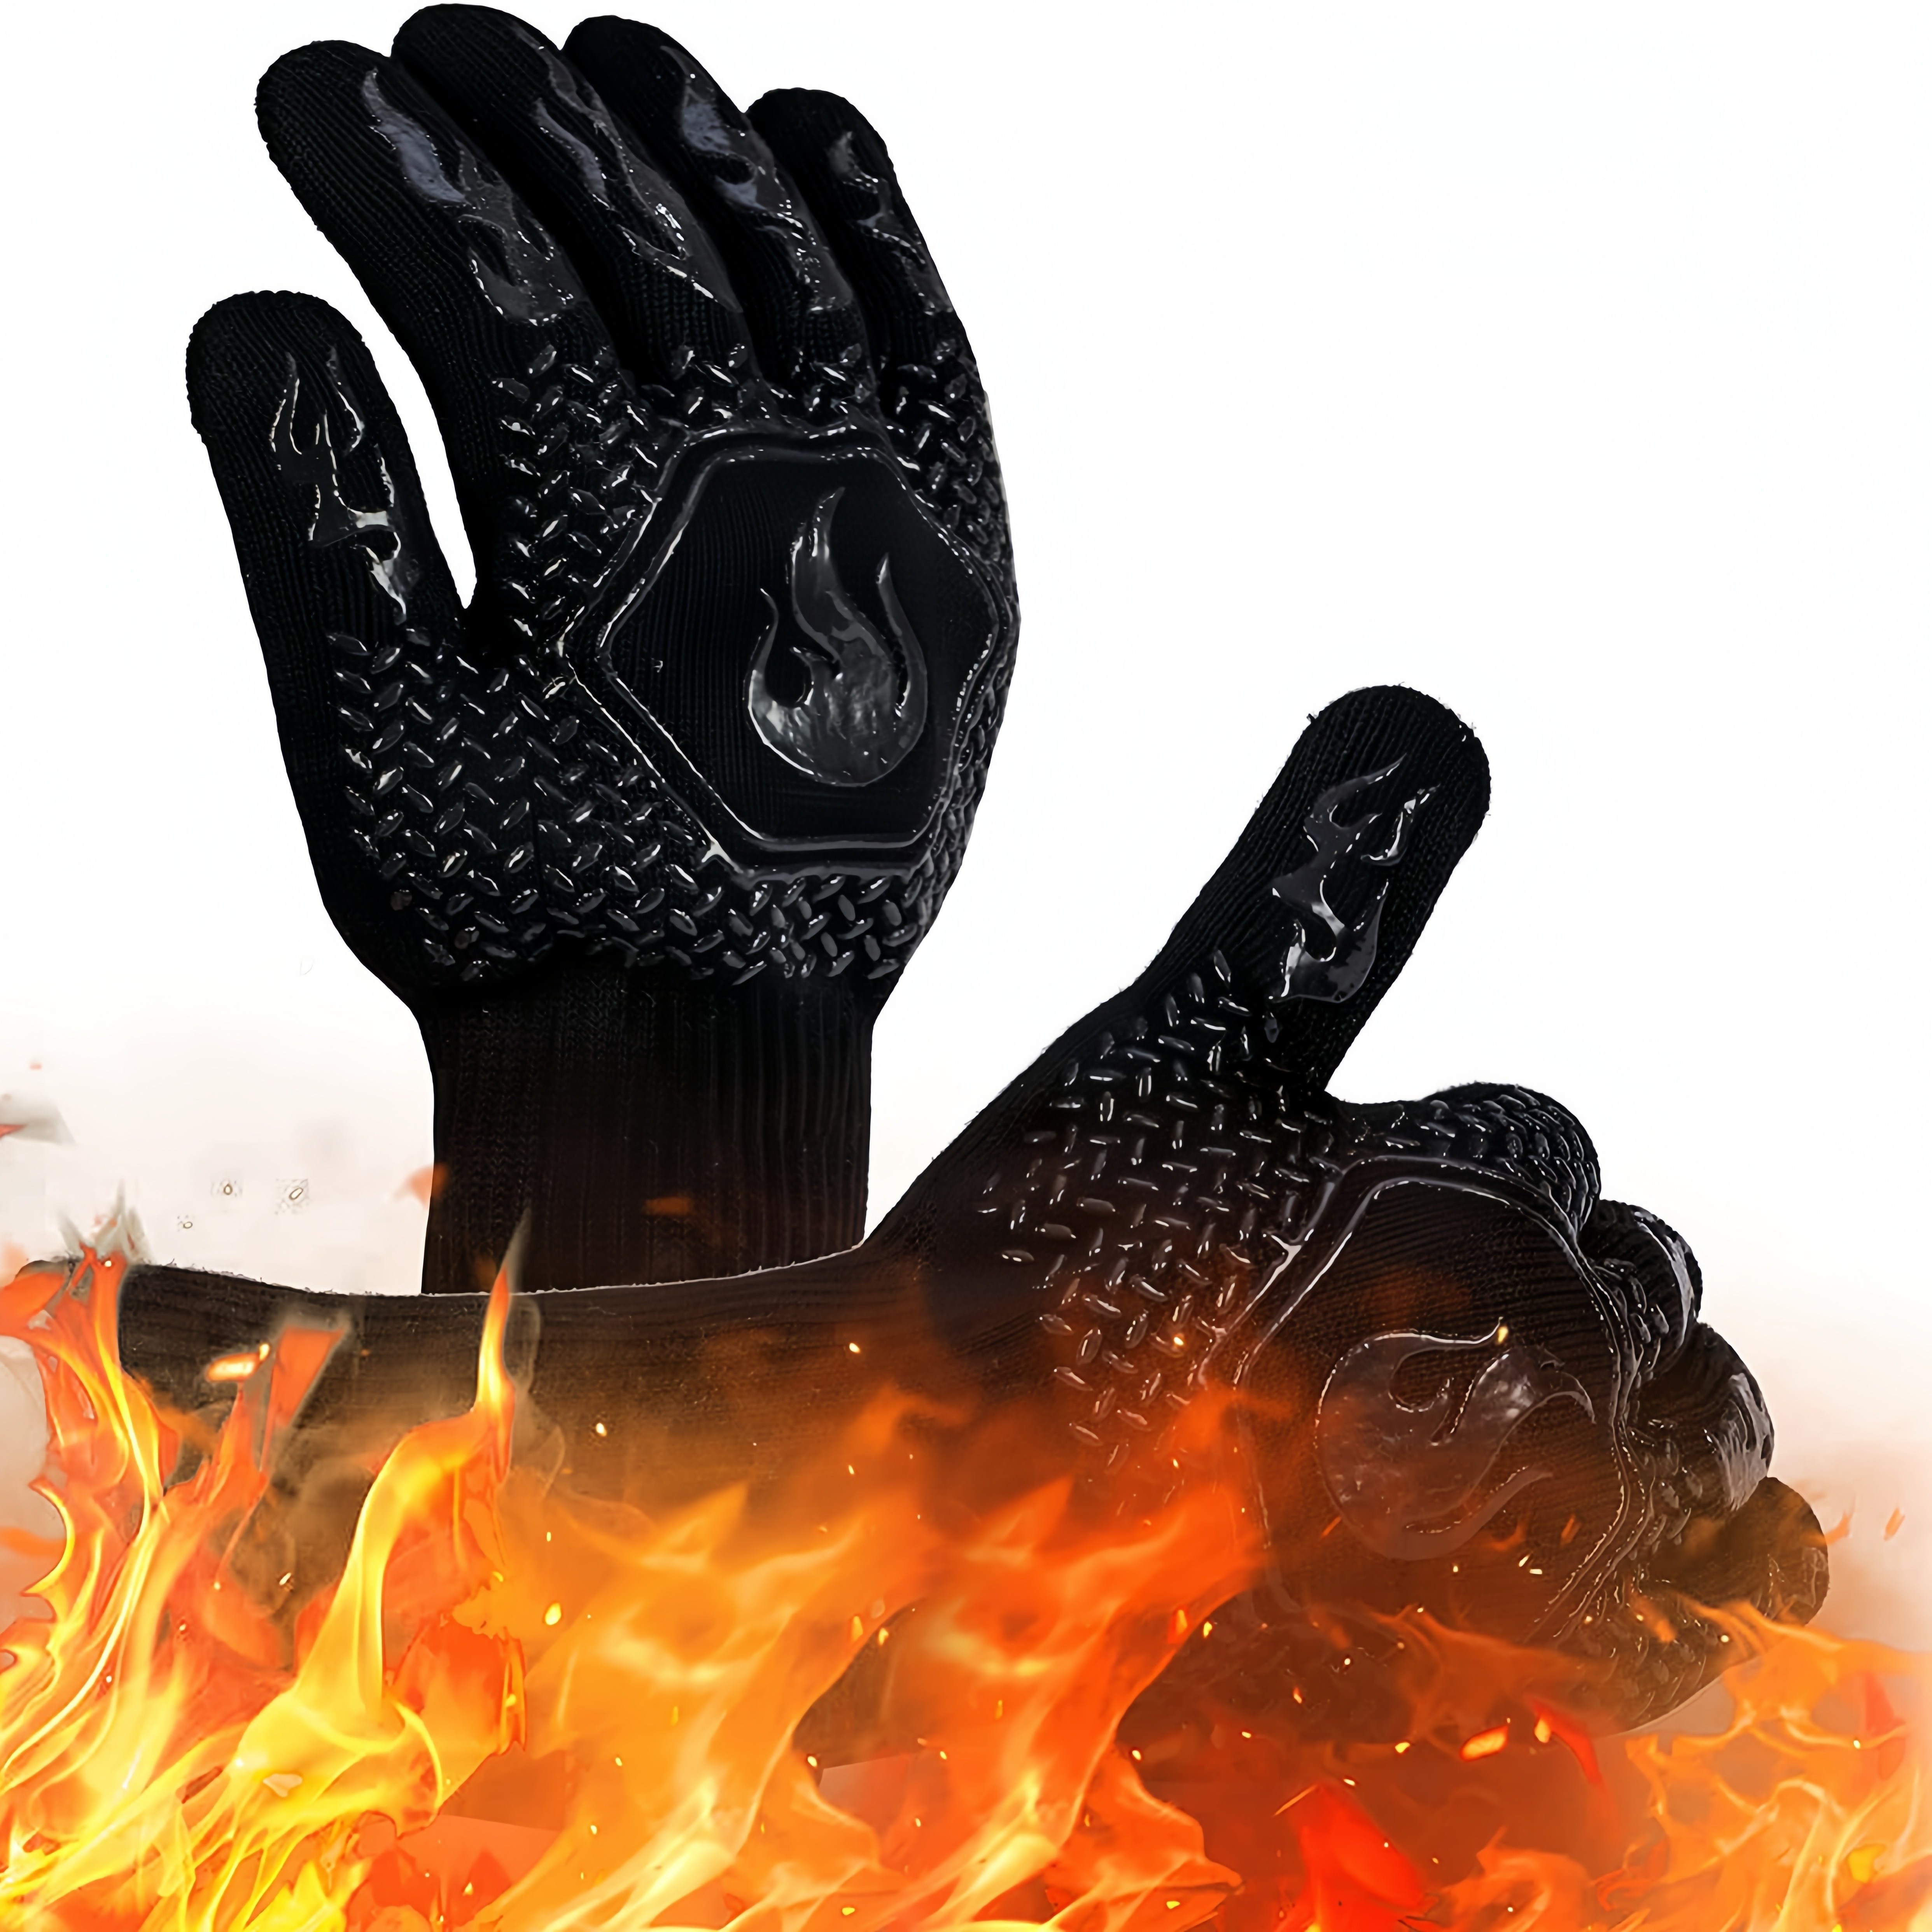 Gants pour four silicone, 10 paires, thermorésistant, maniques grillade  antidérapants, doublure intérieure coton, noir